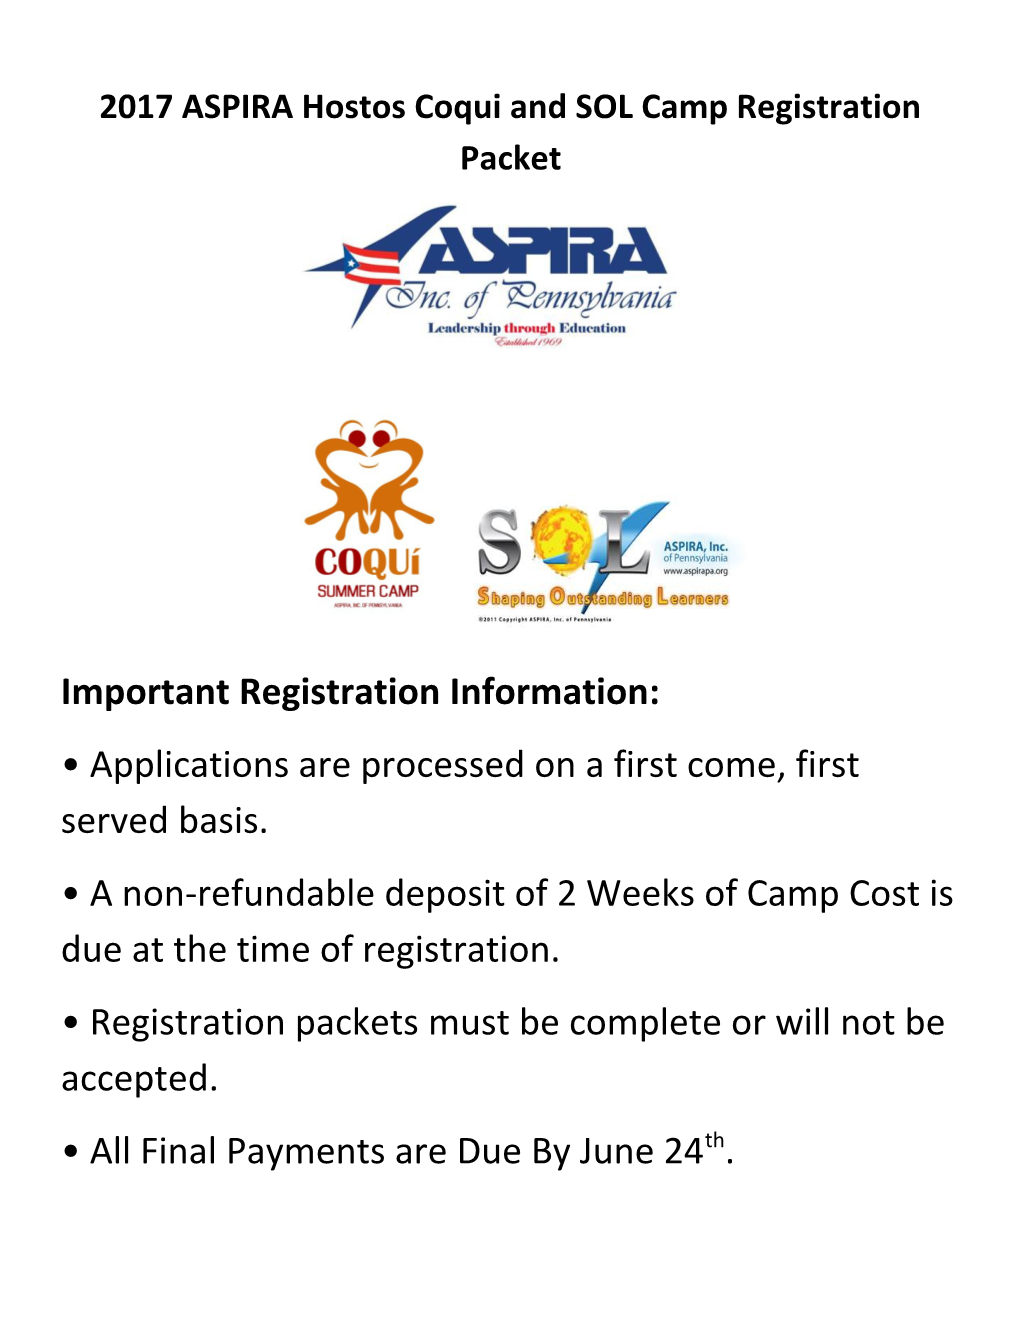 2017 ASPIRA Hostos Coqui and SOL Camp Registration Packet